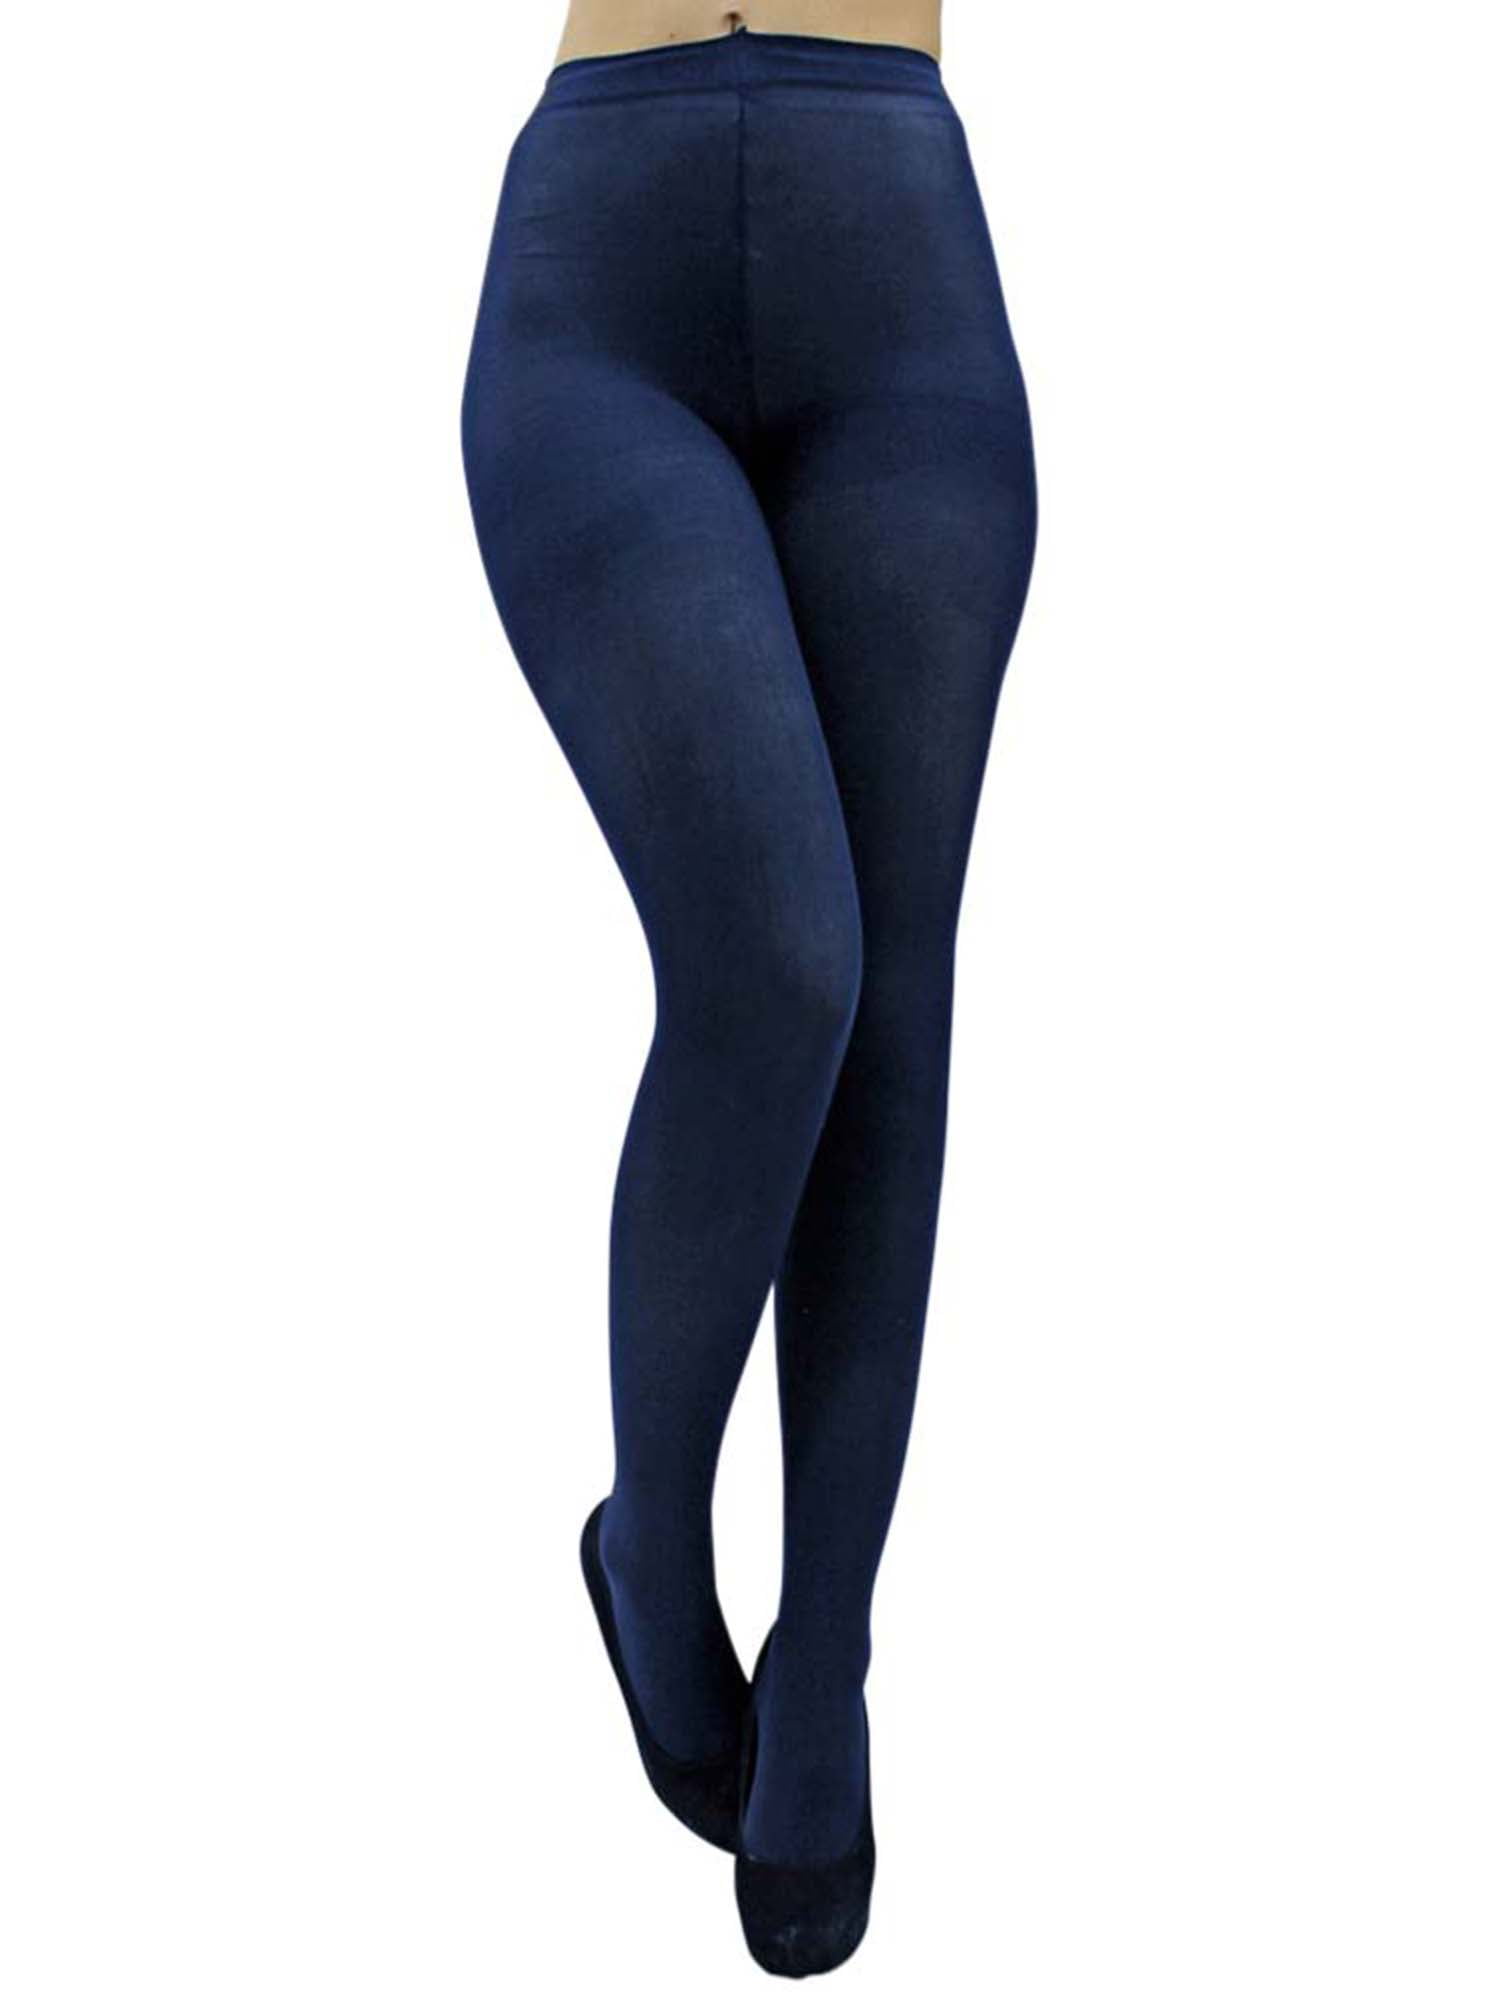 Blue navy tights leggings(see tru) 😲😍 : r/MenInLeggings